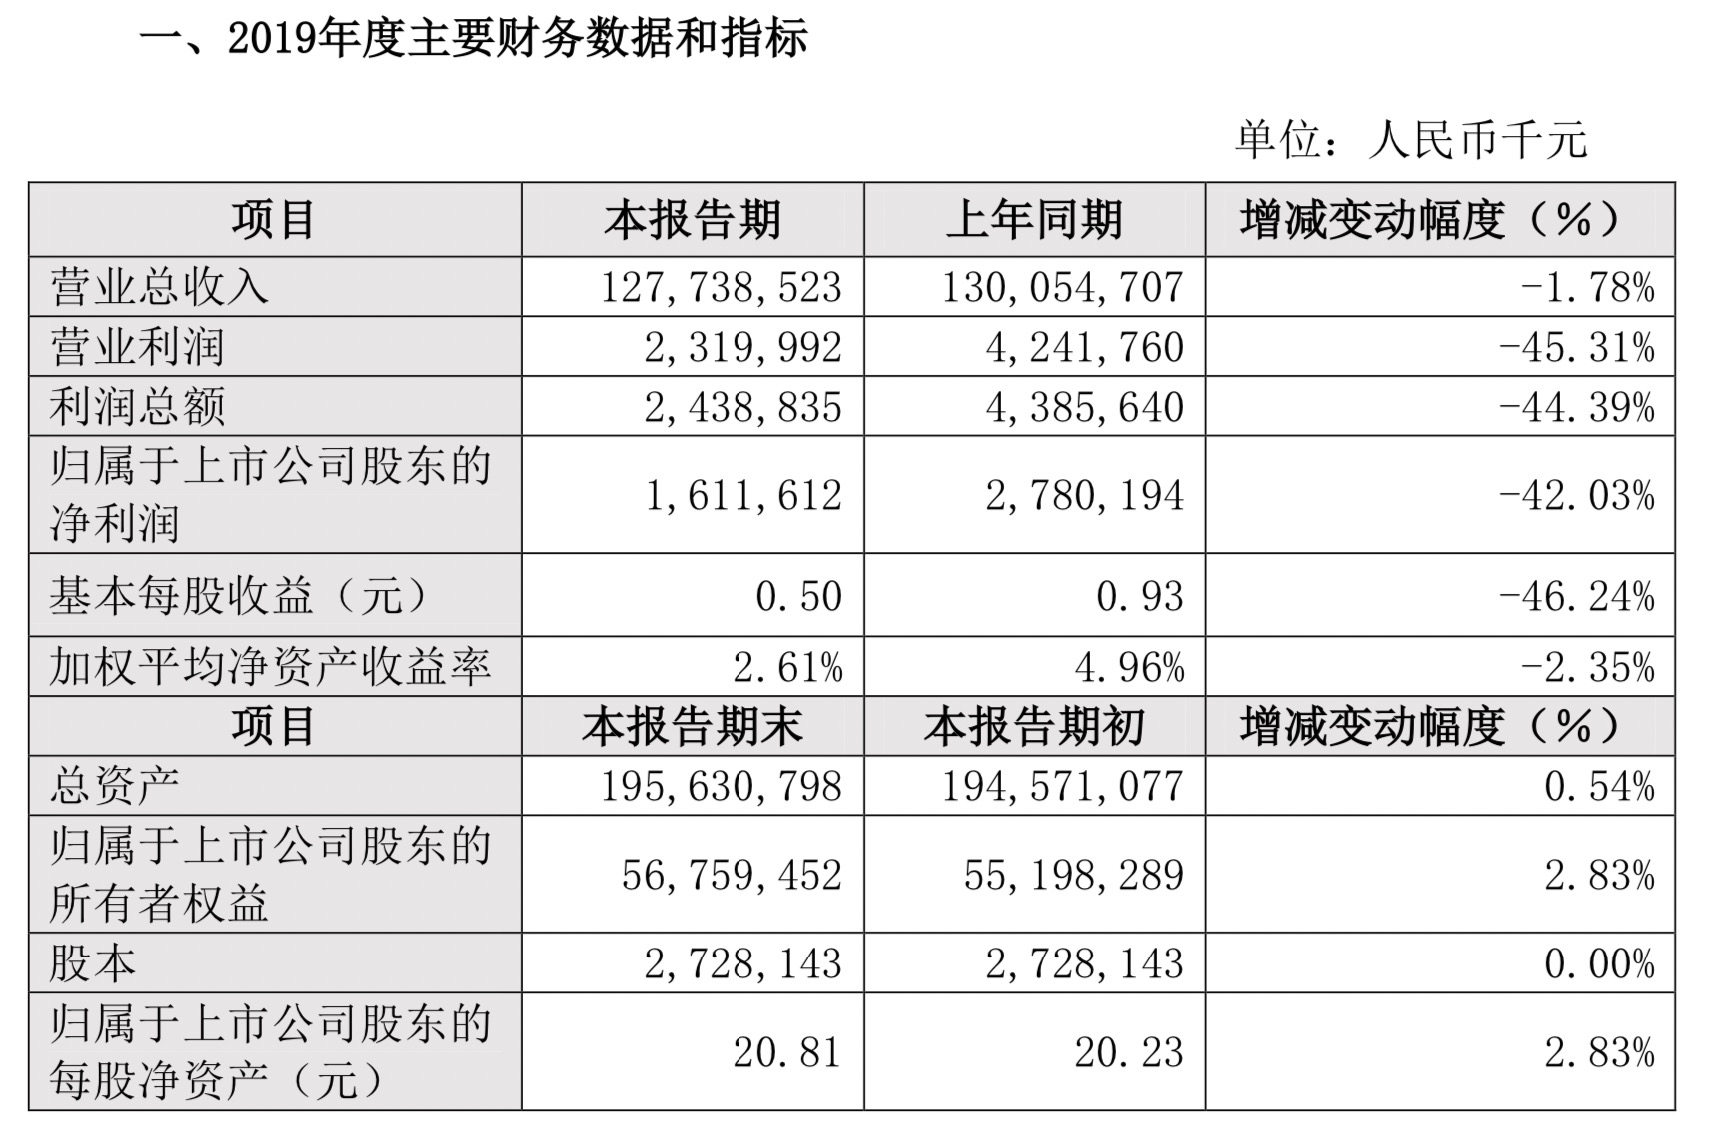 比亚迪2019年营业收入1277.39亿元 同比下降1.78%